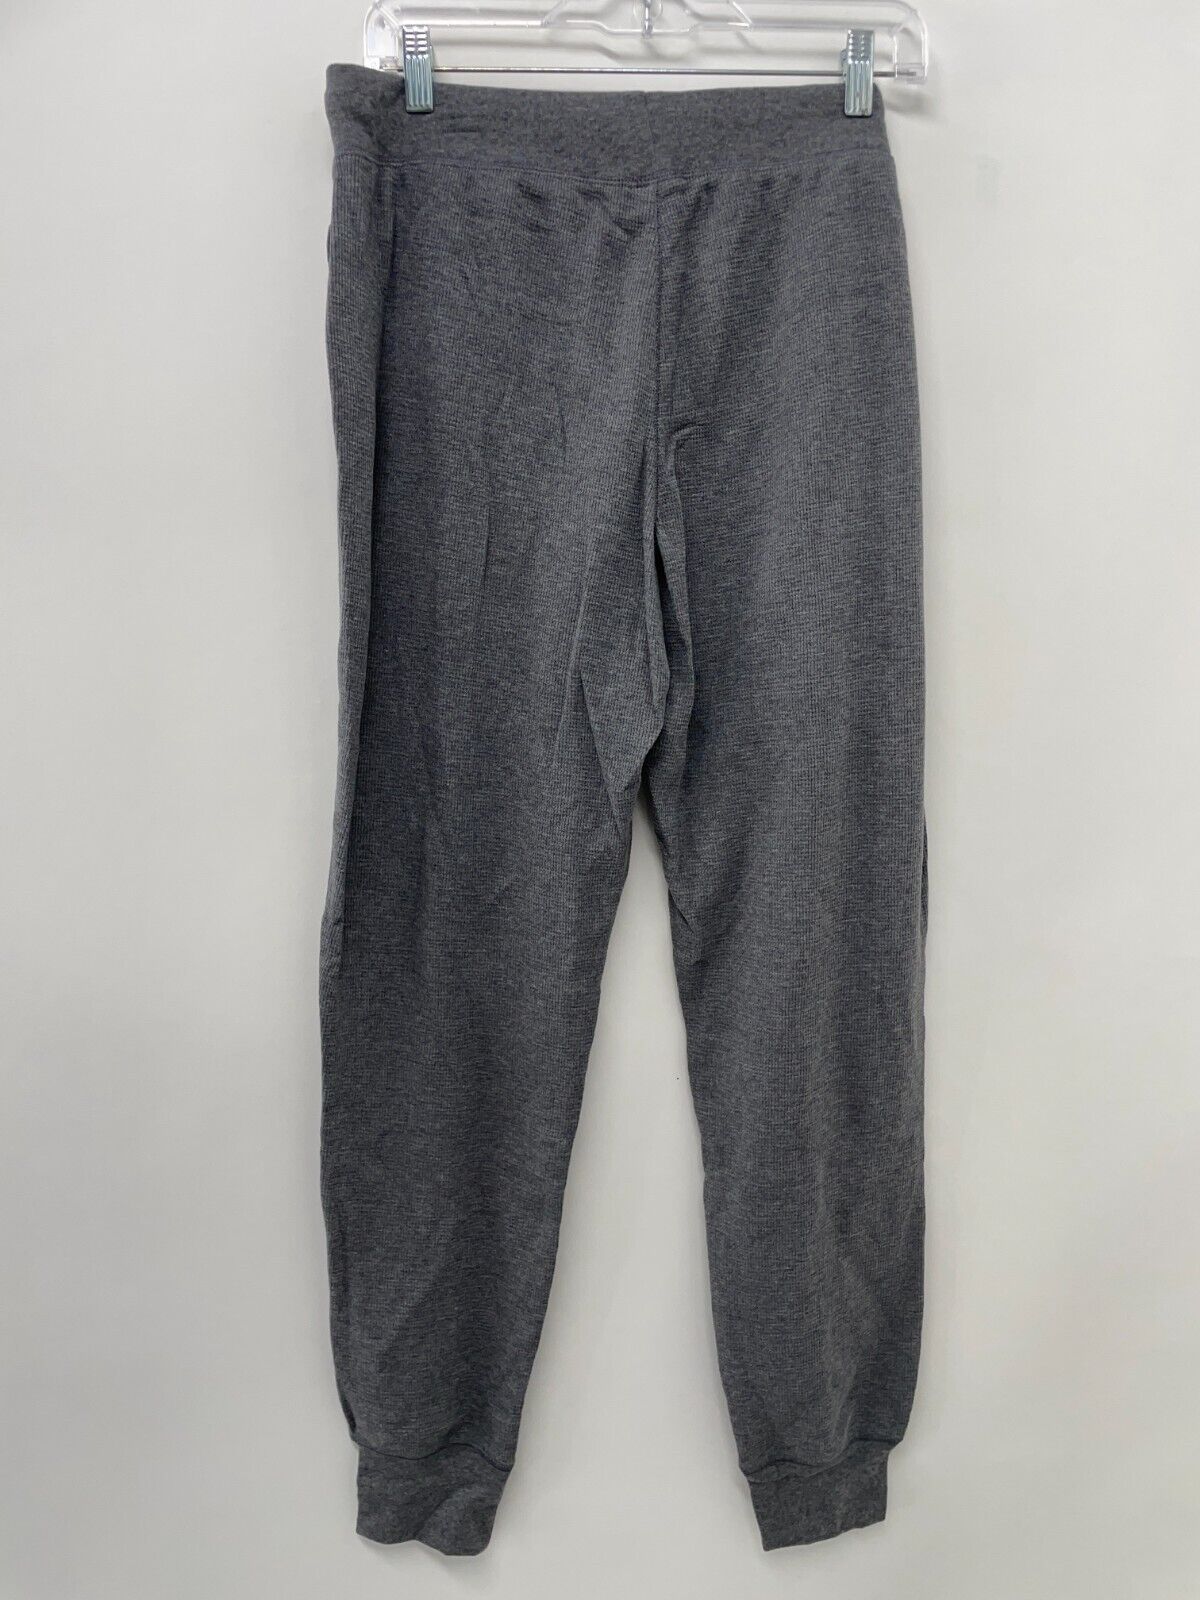 Polo Ralph Lauren Supreme Comfort Knit Pajama Pants (Medium, Polo